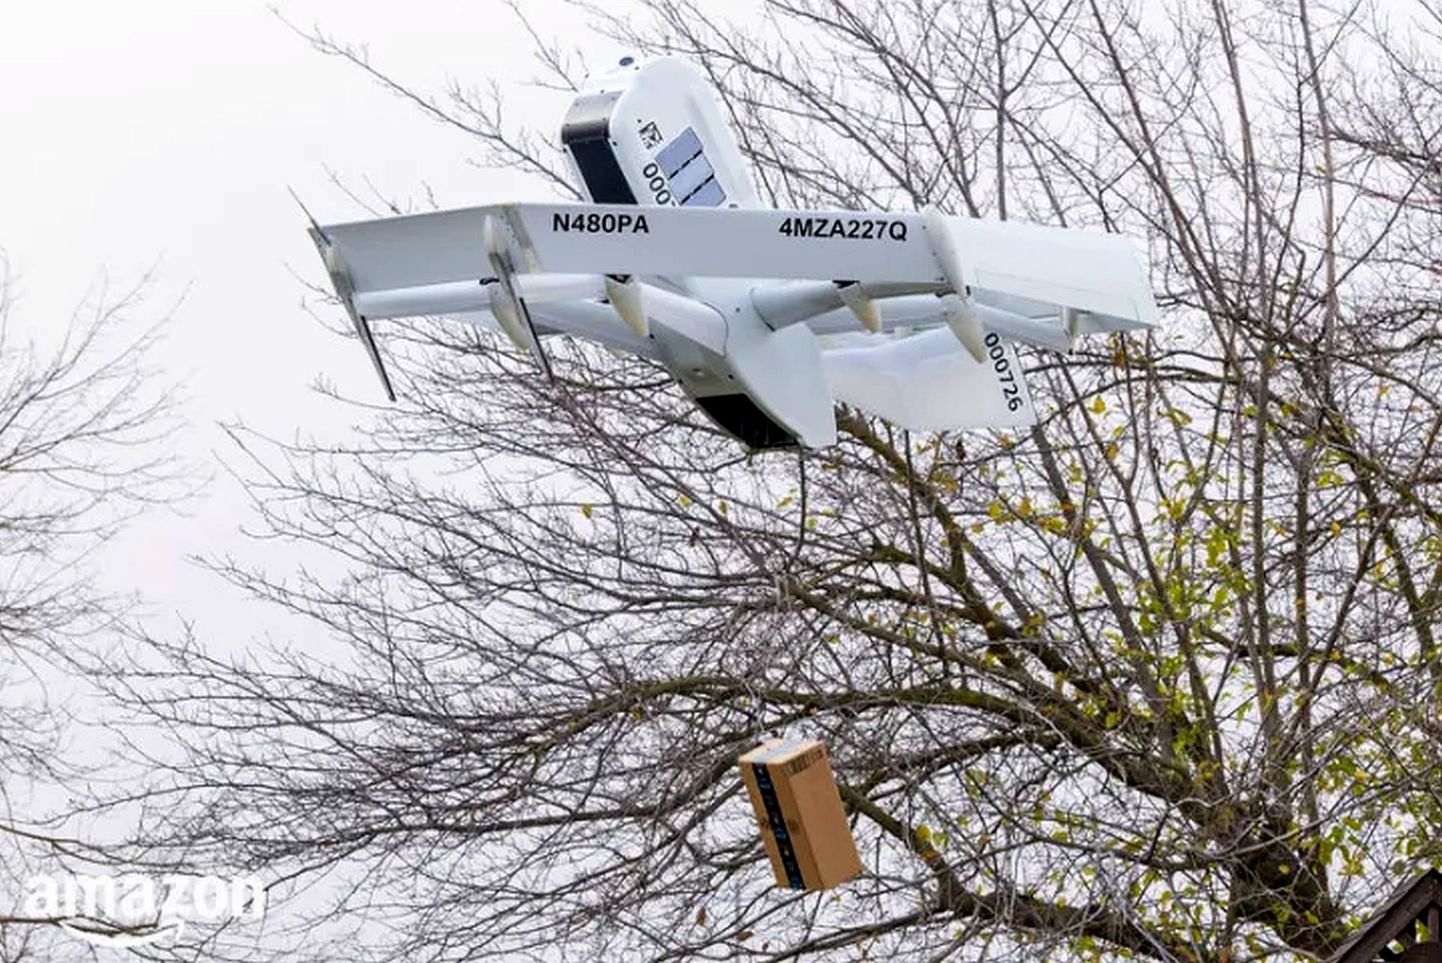 Amazoni uus droon Prime Air lendab tellija kohale ja laseb pika trossi otsas paki alla maa peale.